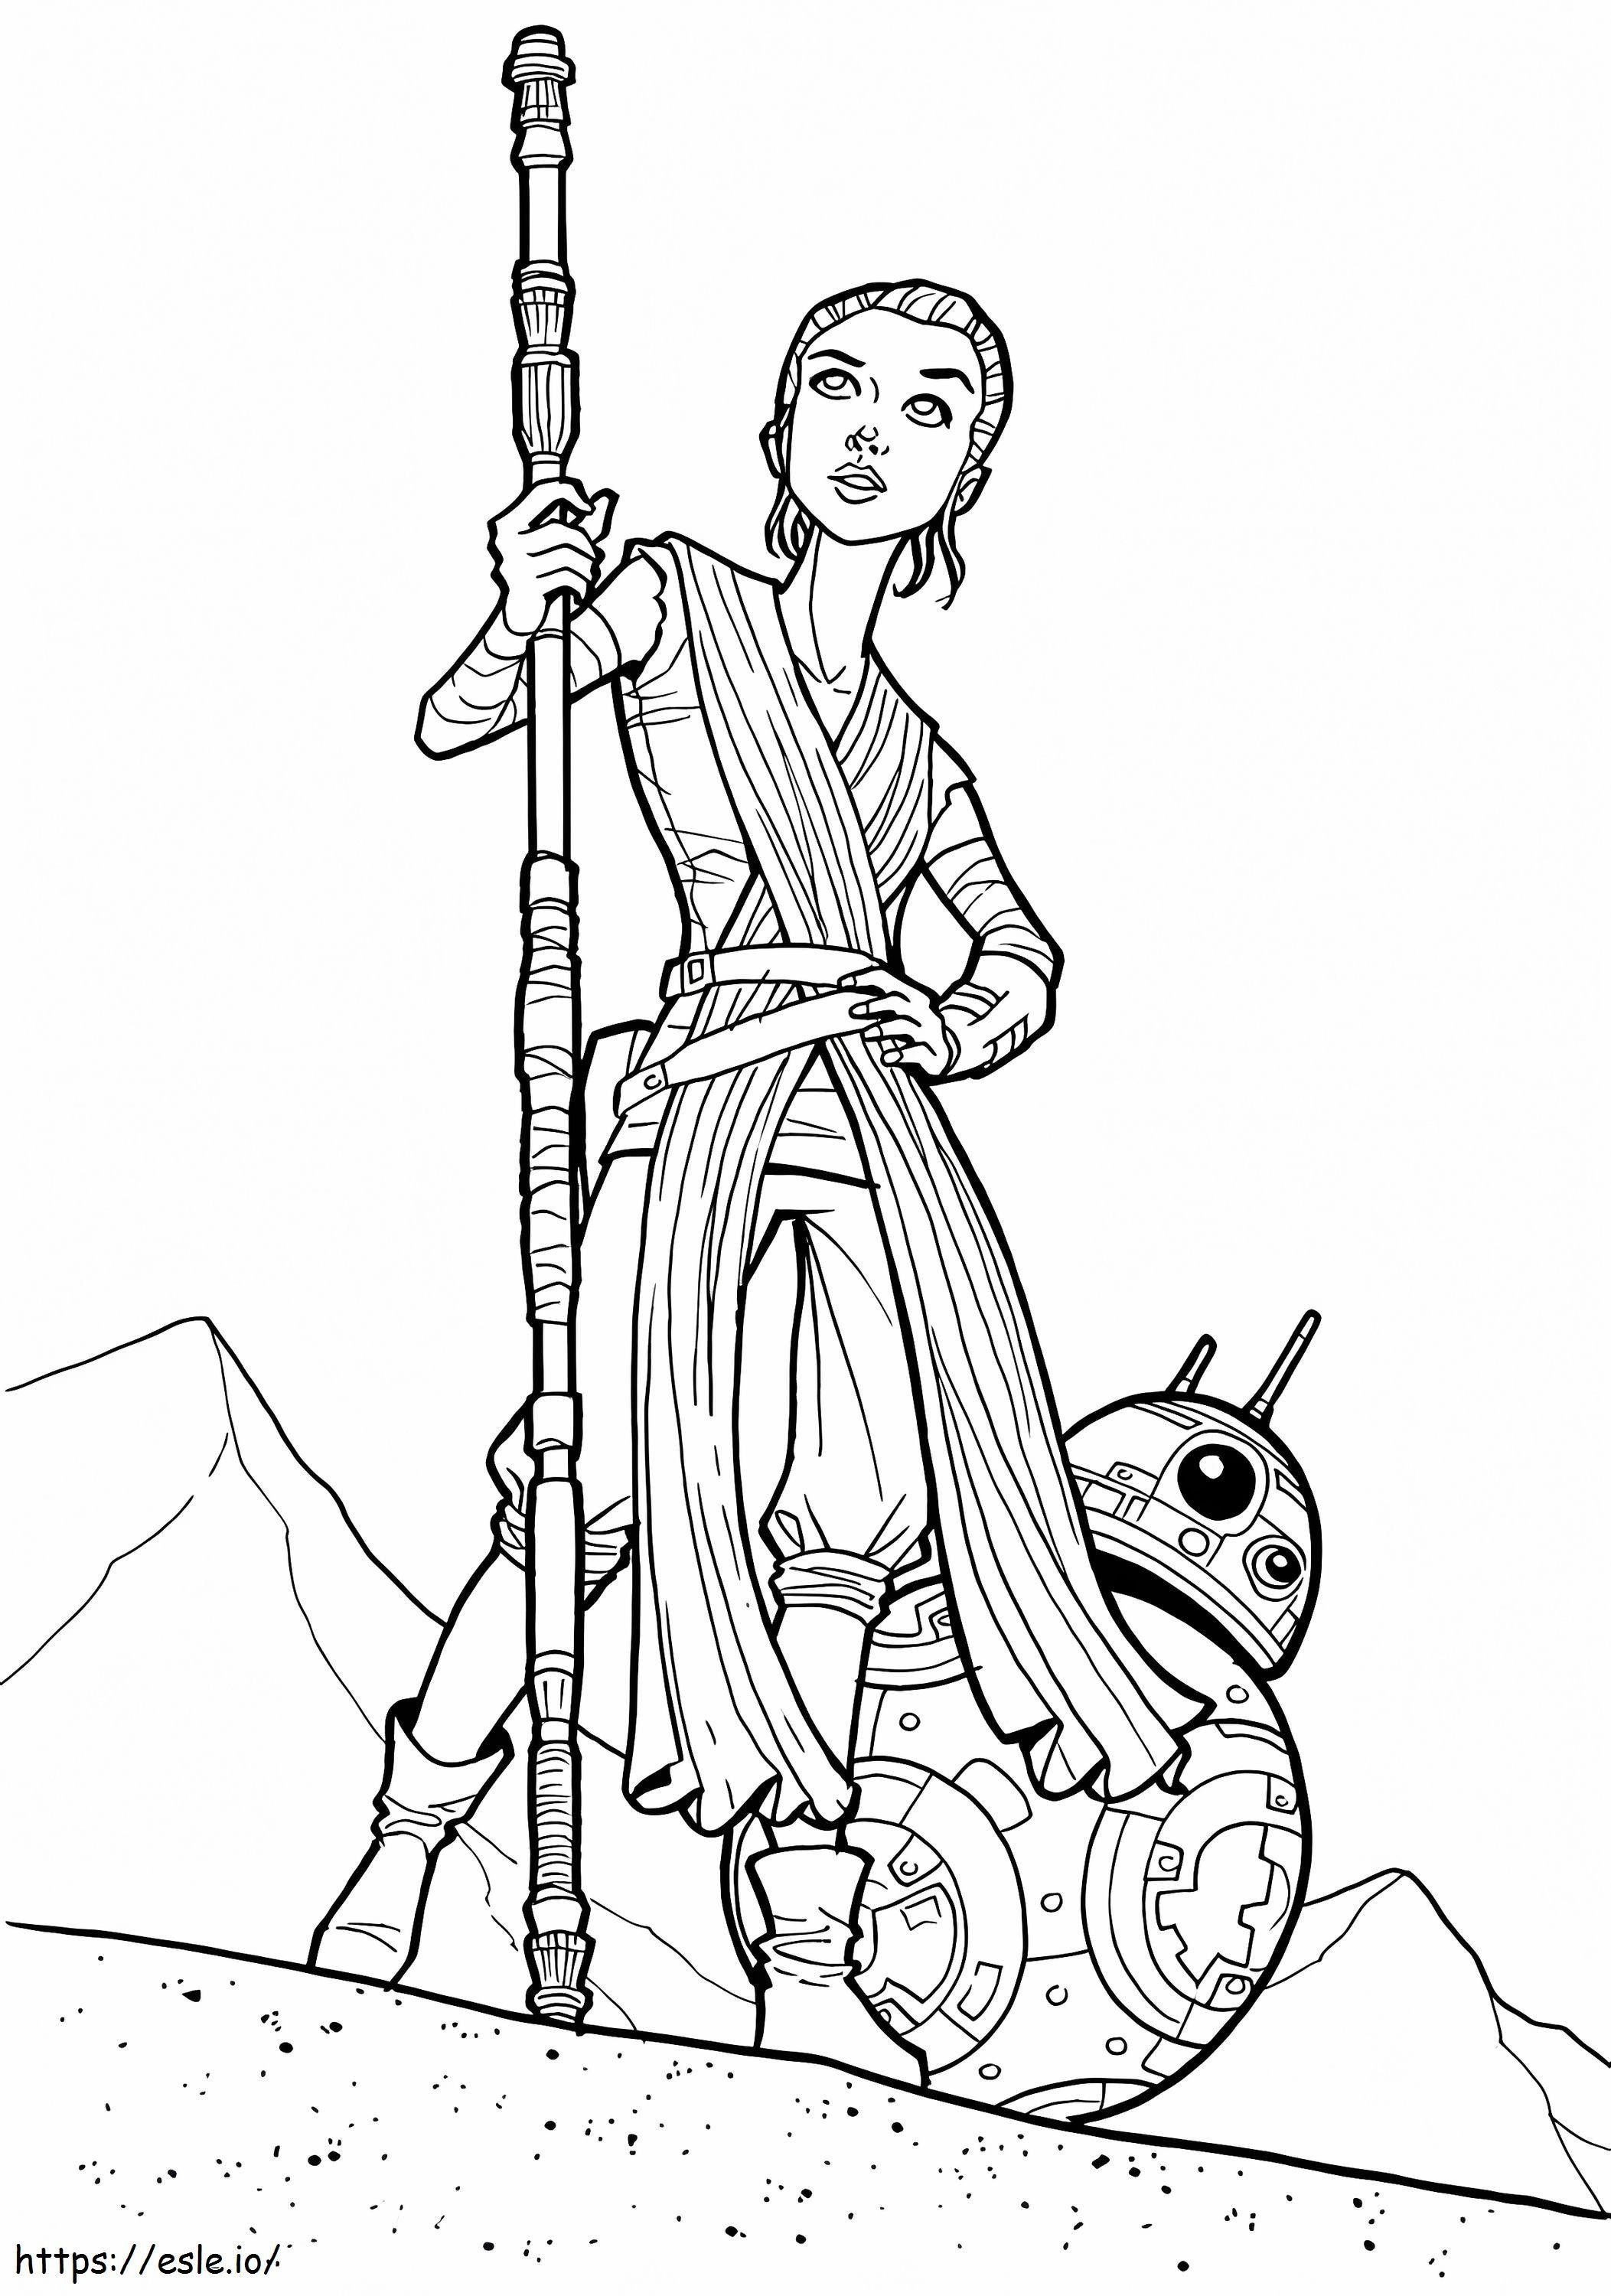 Rey i BB 8 z Gwiezdnych wojen kolorowanka